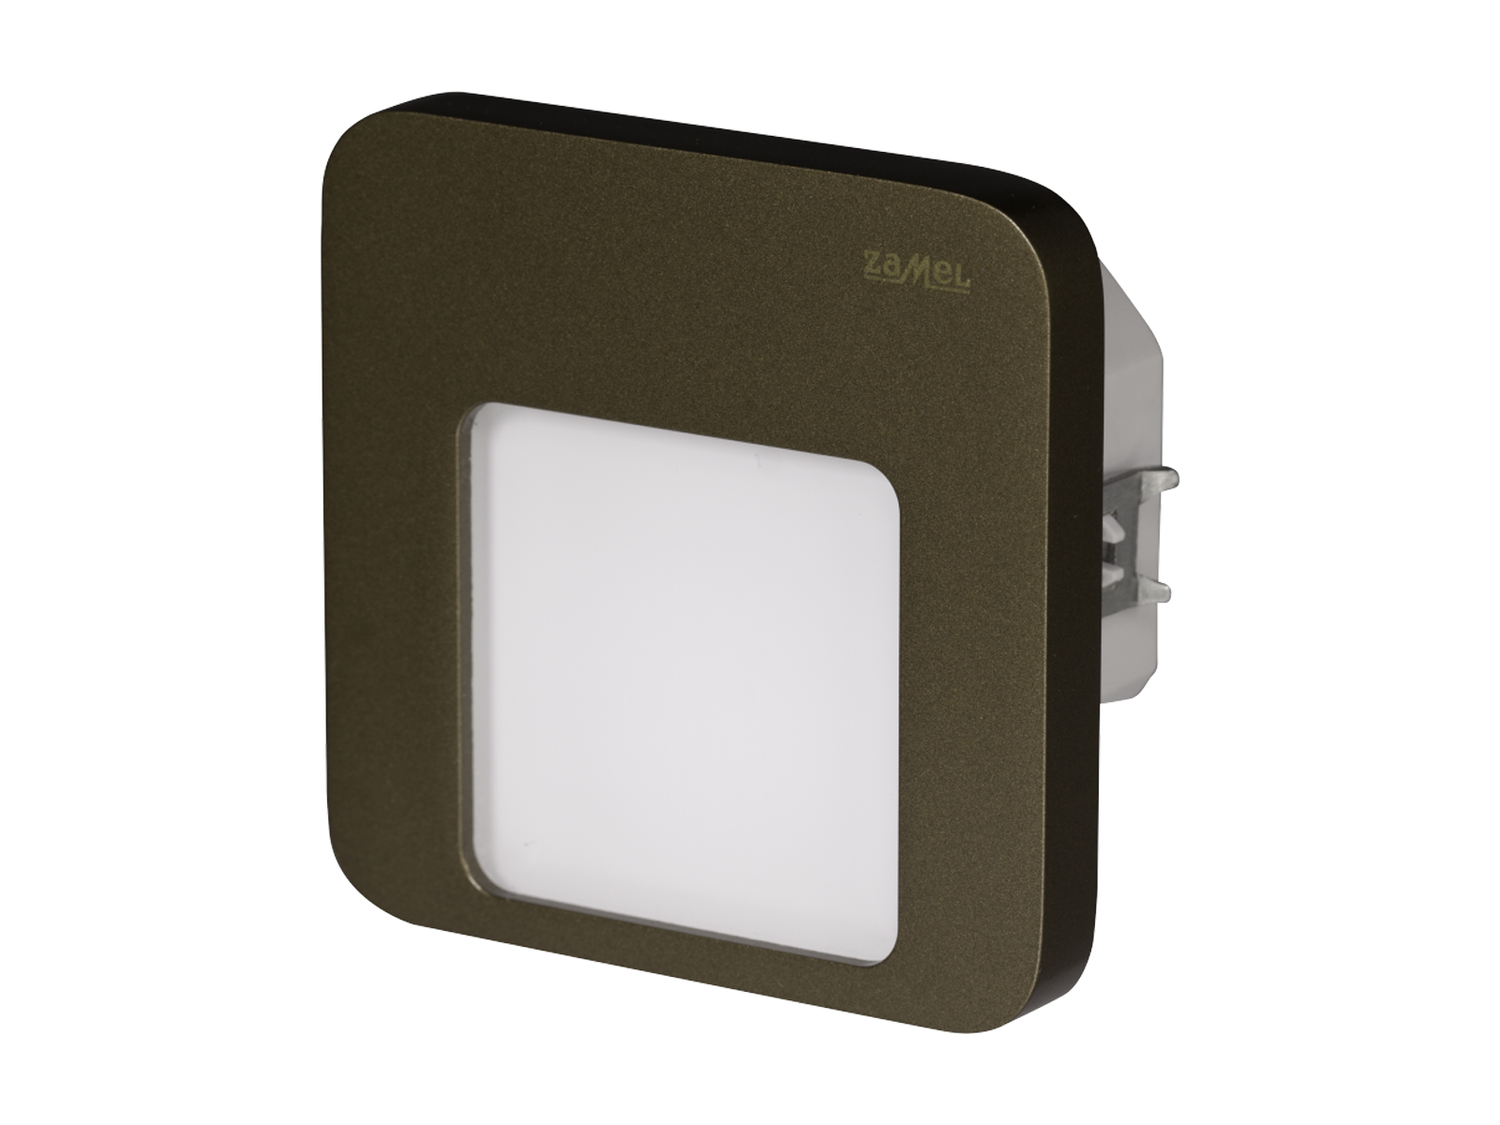 Svítidlo LED pod omítku LEDIX MOZA 230V AC, zlatá patina, teplá bílá, IP20